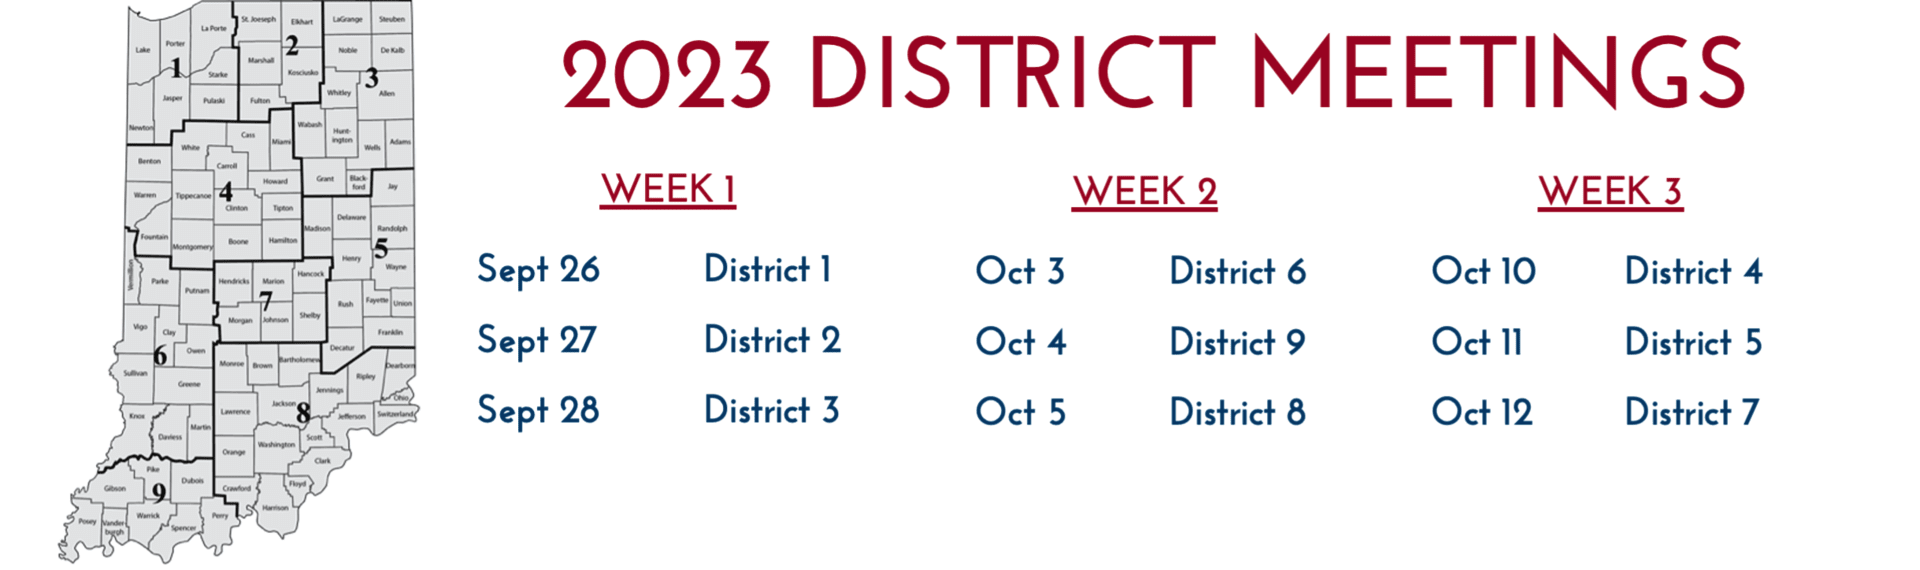 2023 District Meetings